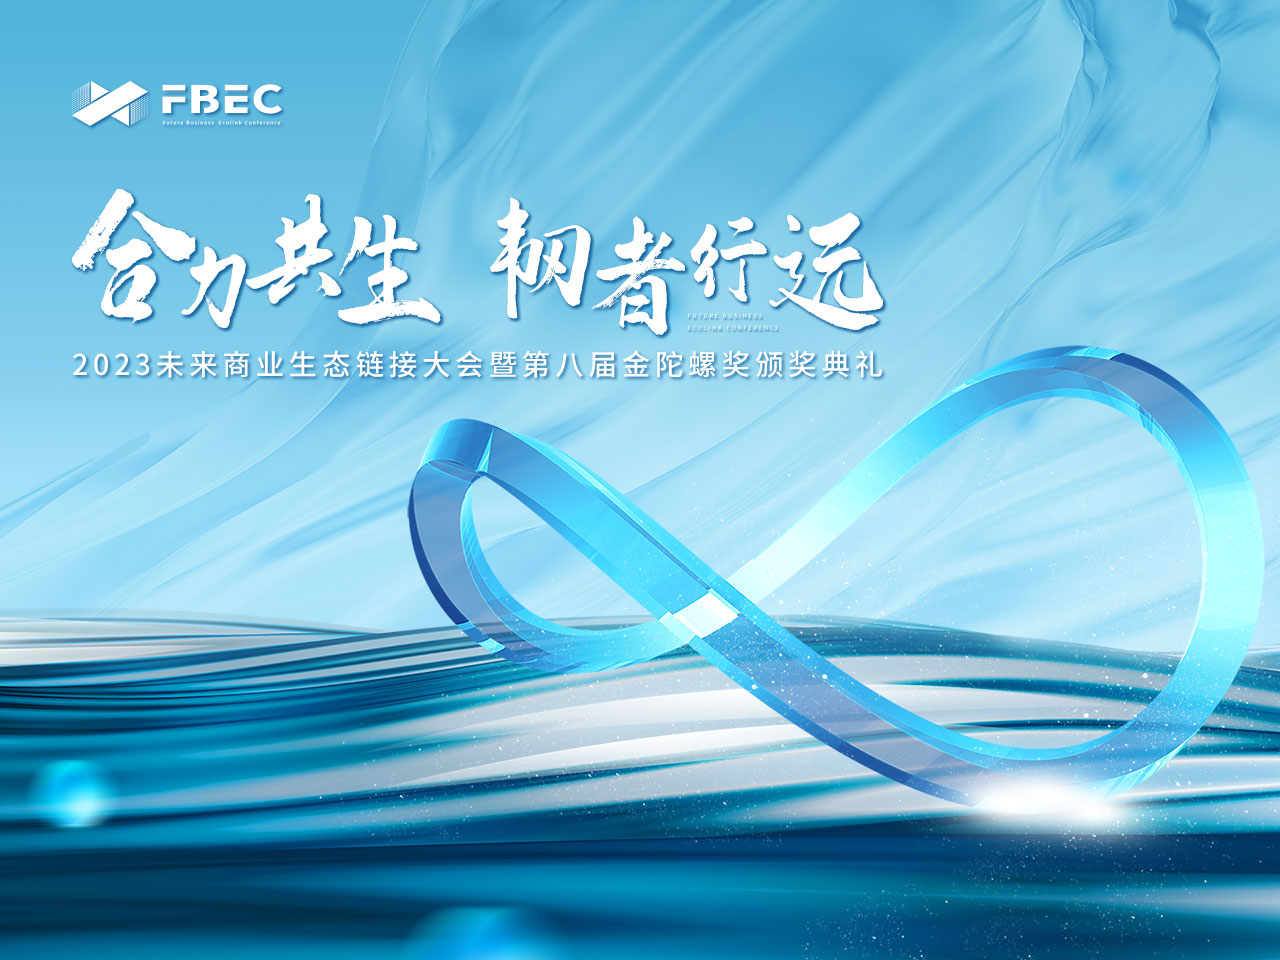 FBEC2023 | VRplay 社区发起人 潘博航确认出席并参与圆桌论坛